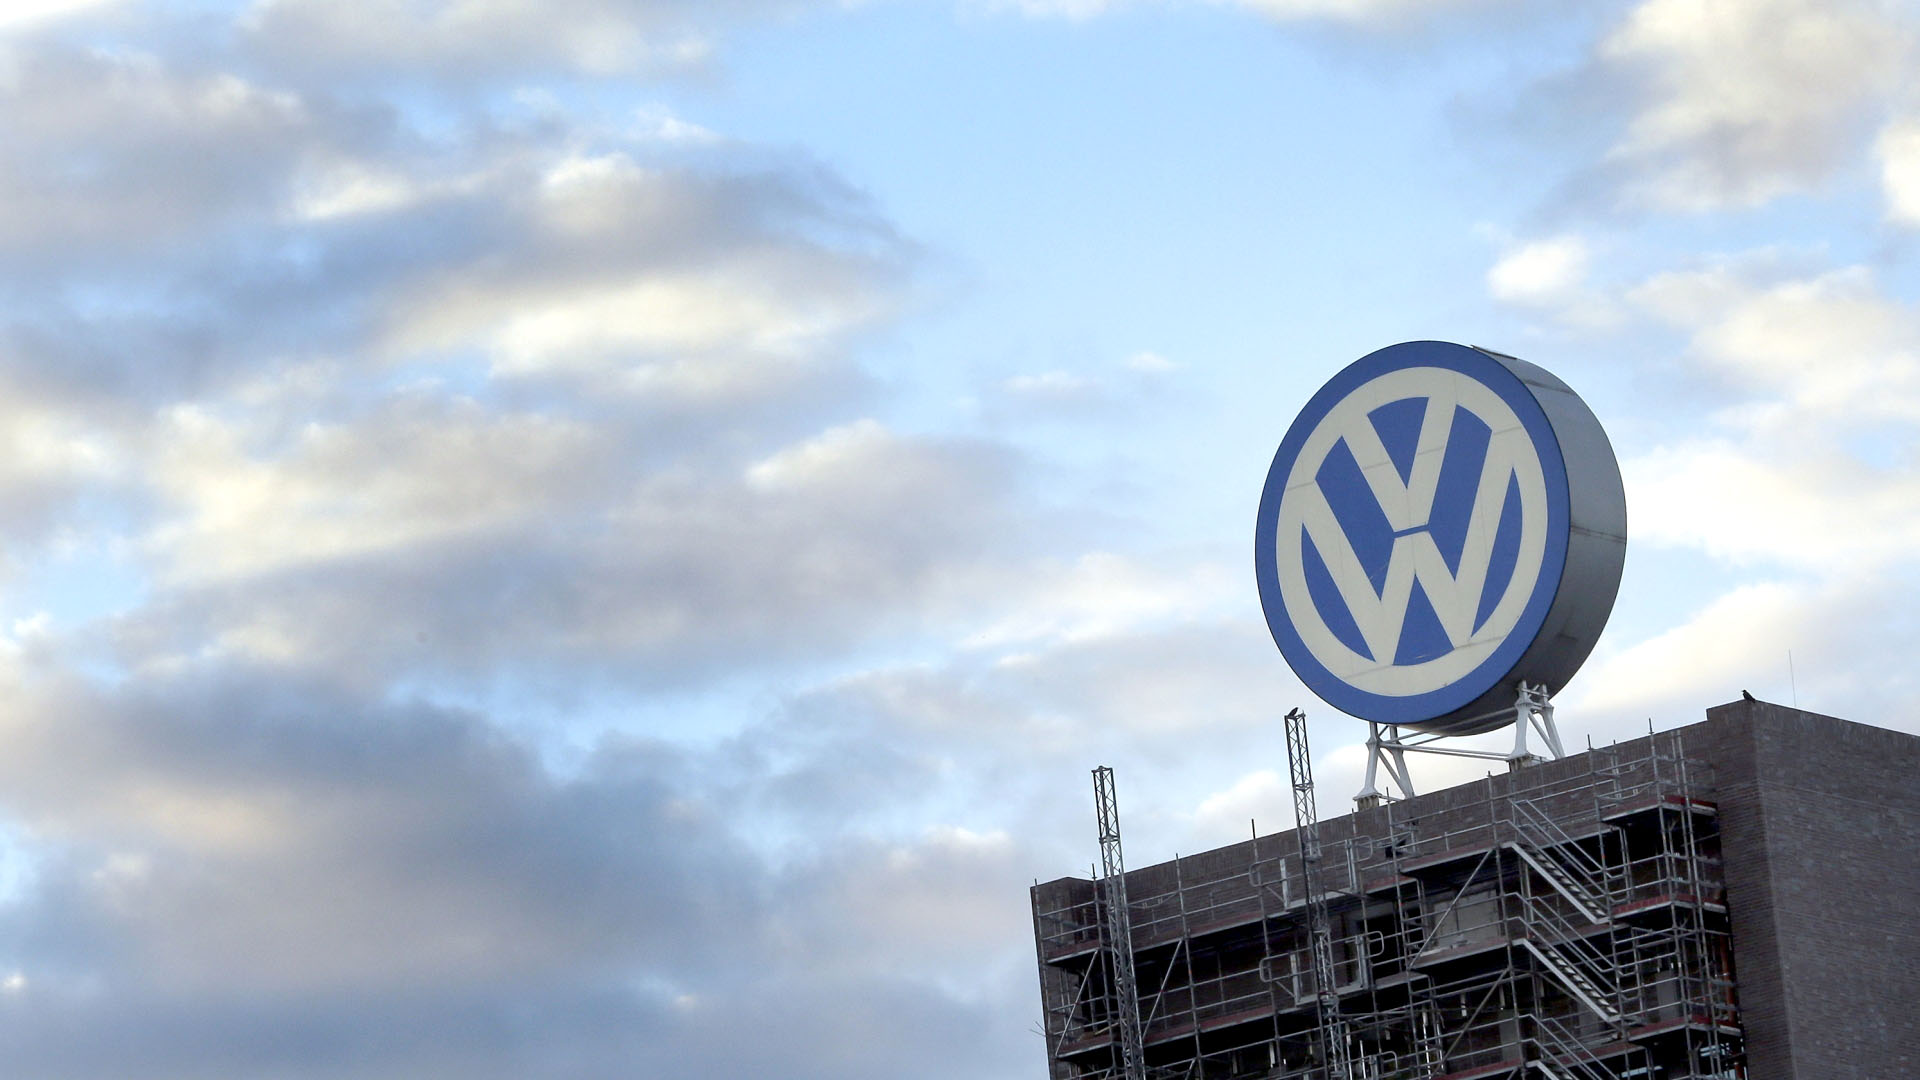 Nach Aufsichtsratssitzung: Kehrt bei VW jetzt Ruhe ein?